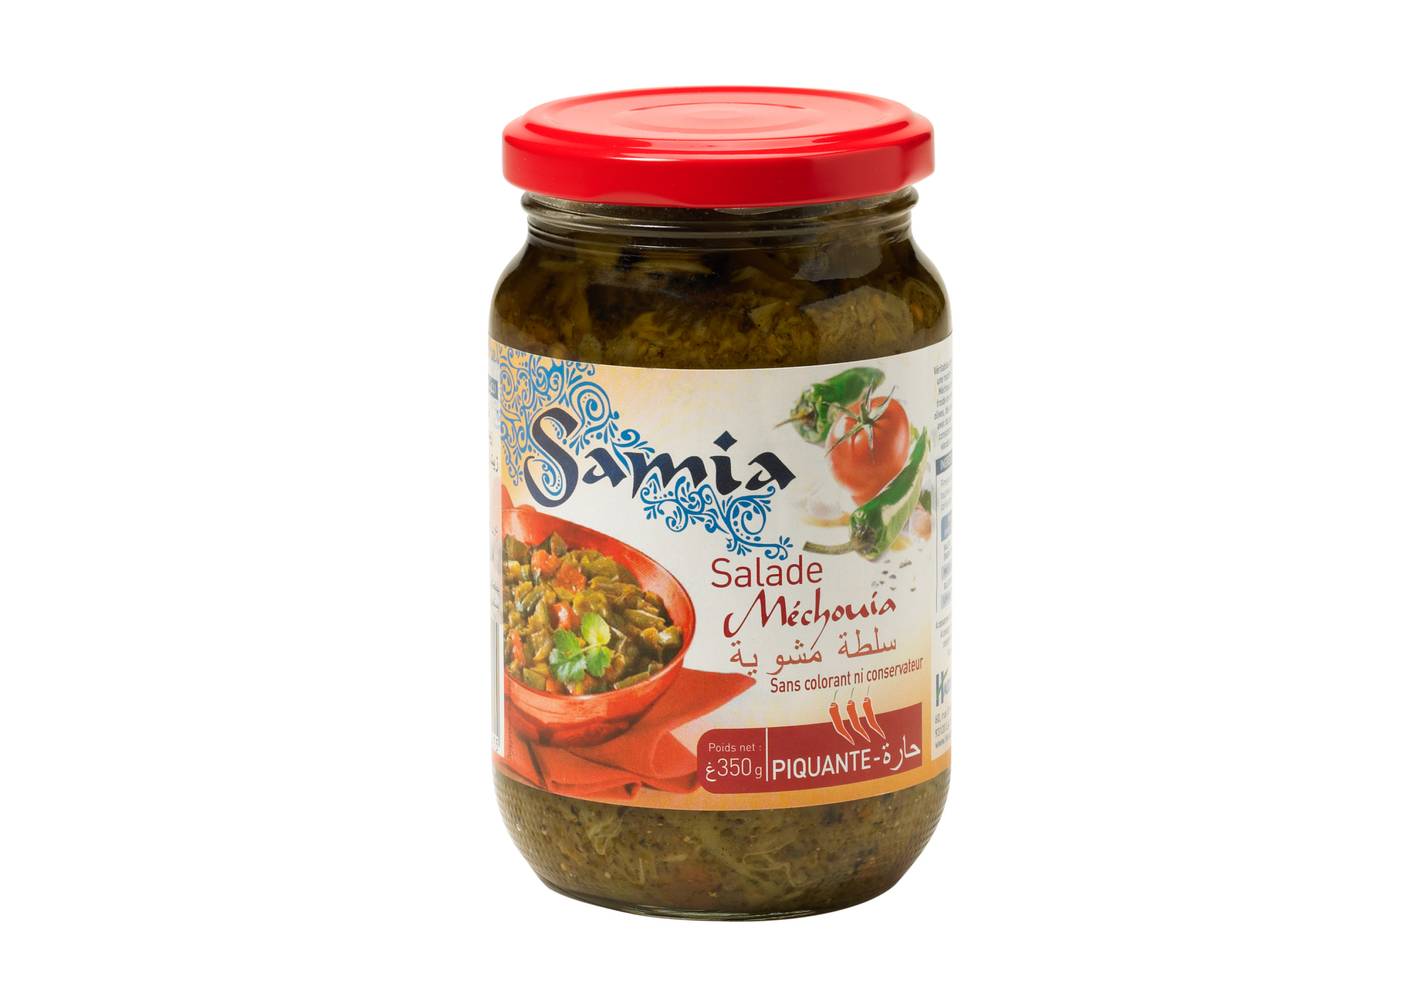 Samia - Salade mechouia piquante